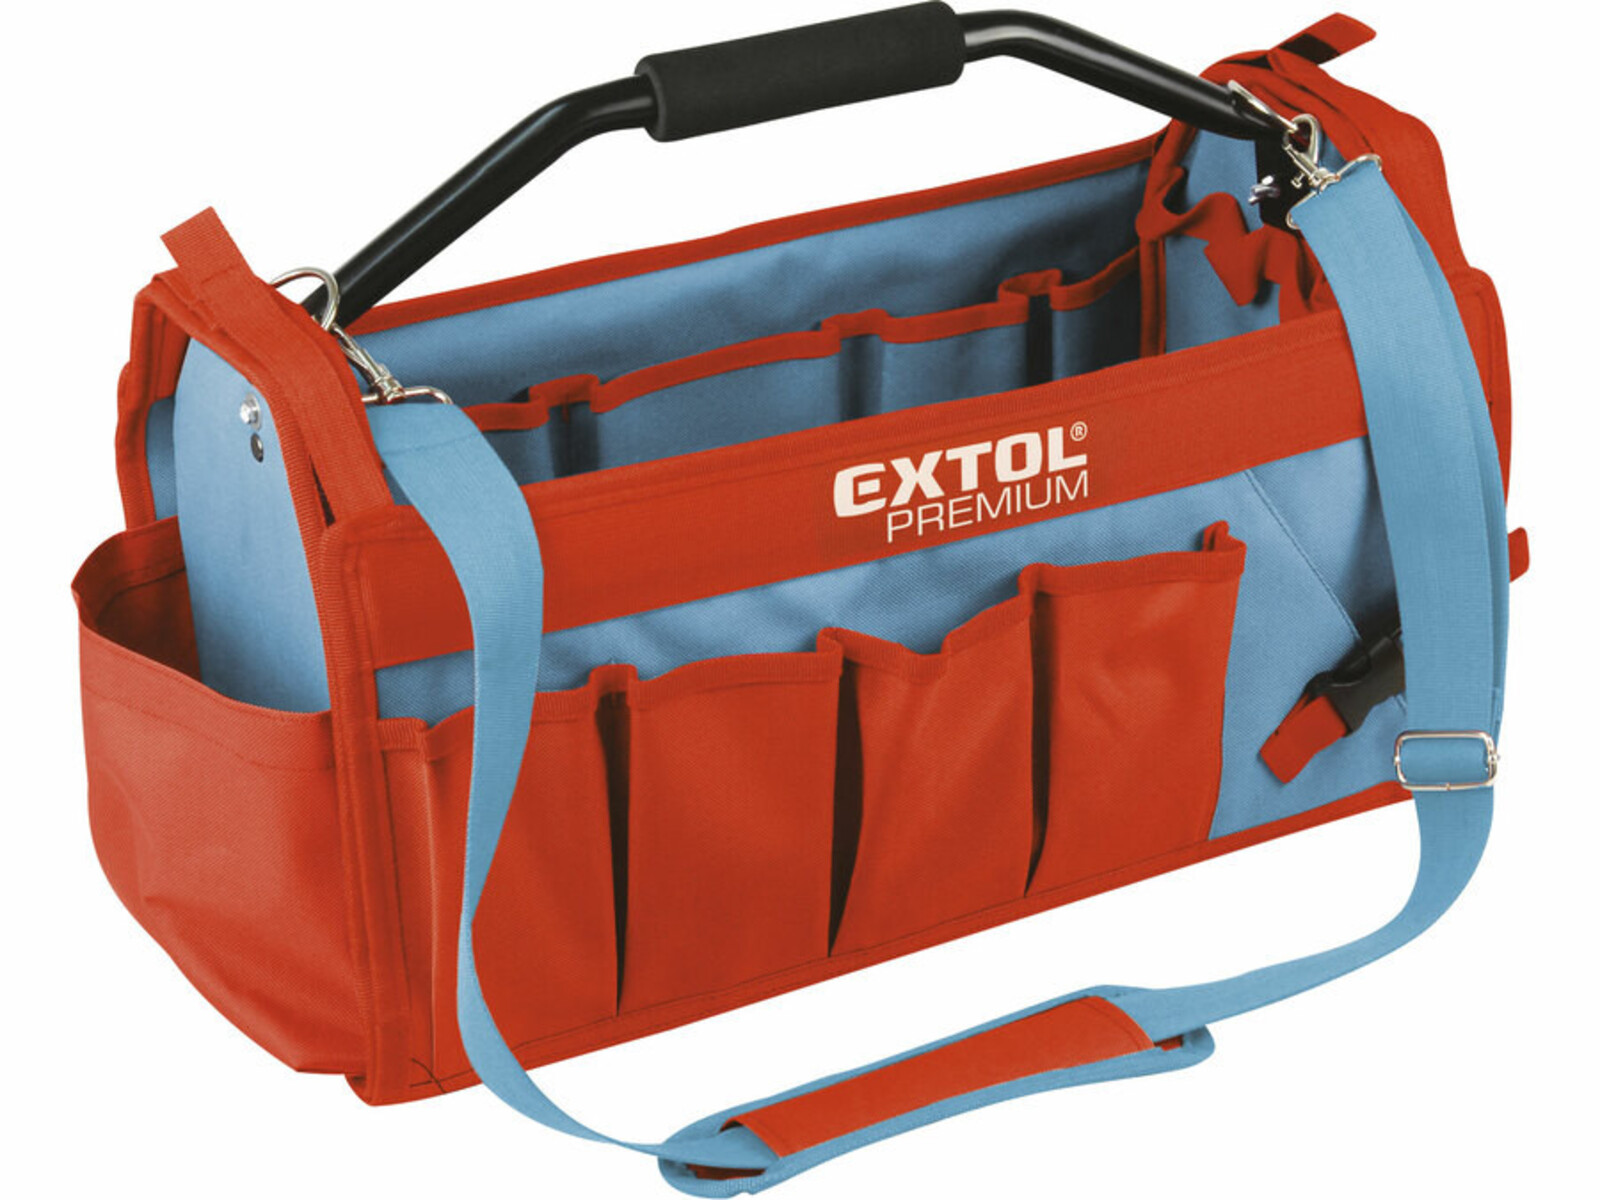 Extol Premium 8858022 taška na náradie s kovovou rukoväťou, 49x23x28cm, 31 vreciek, nylon - farba: červená/sivá